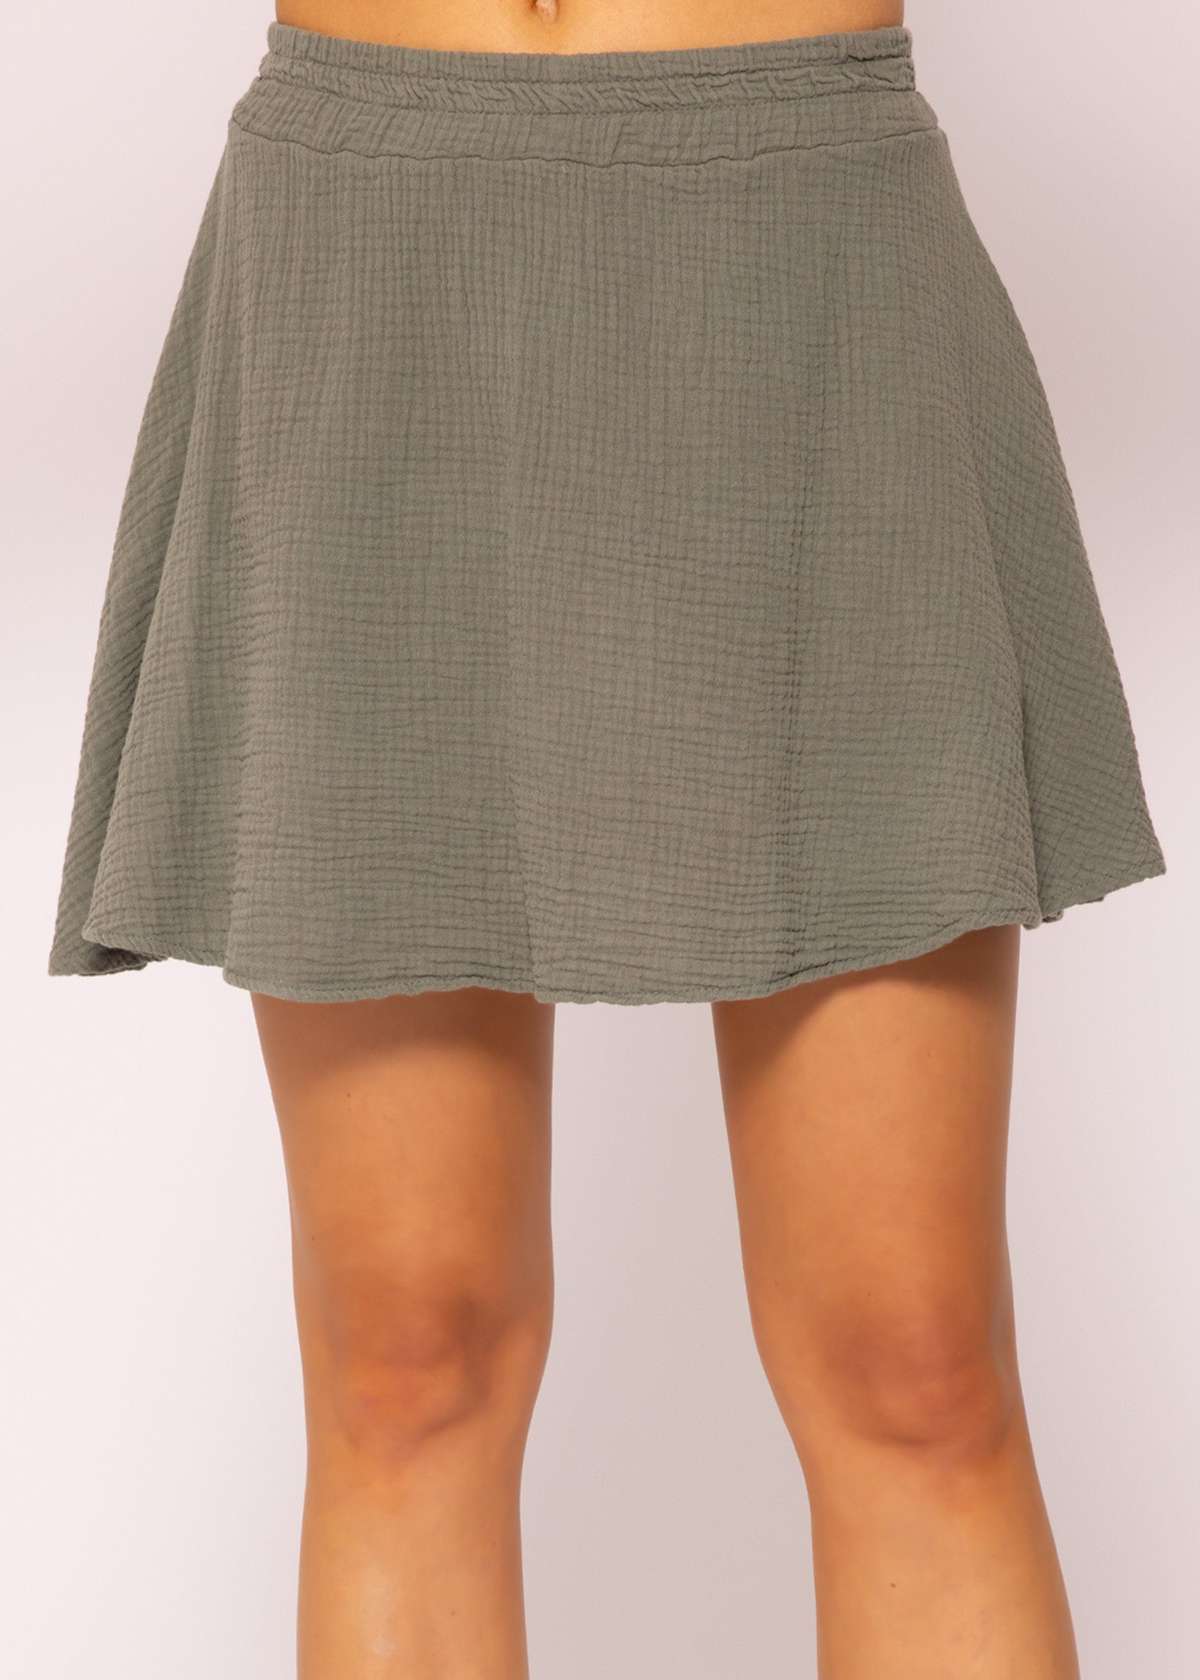 Женская брючная юбка-короткая мини-юбка из муслина 100% хлопок (муслин)